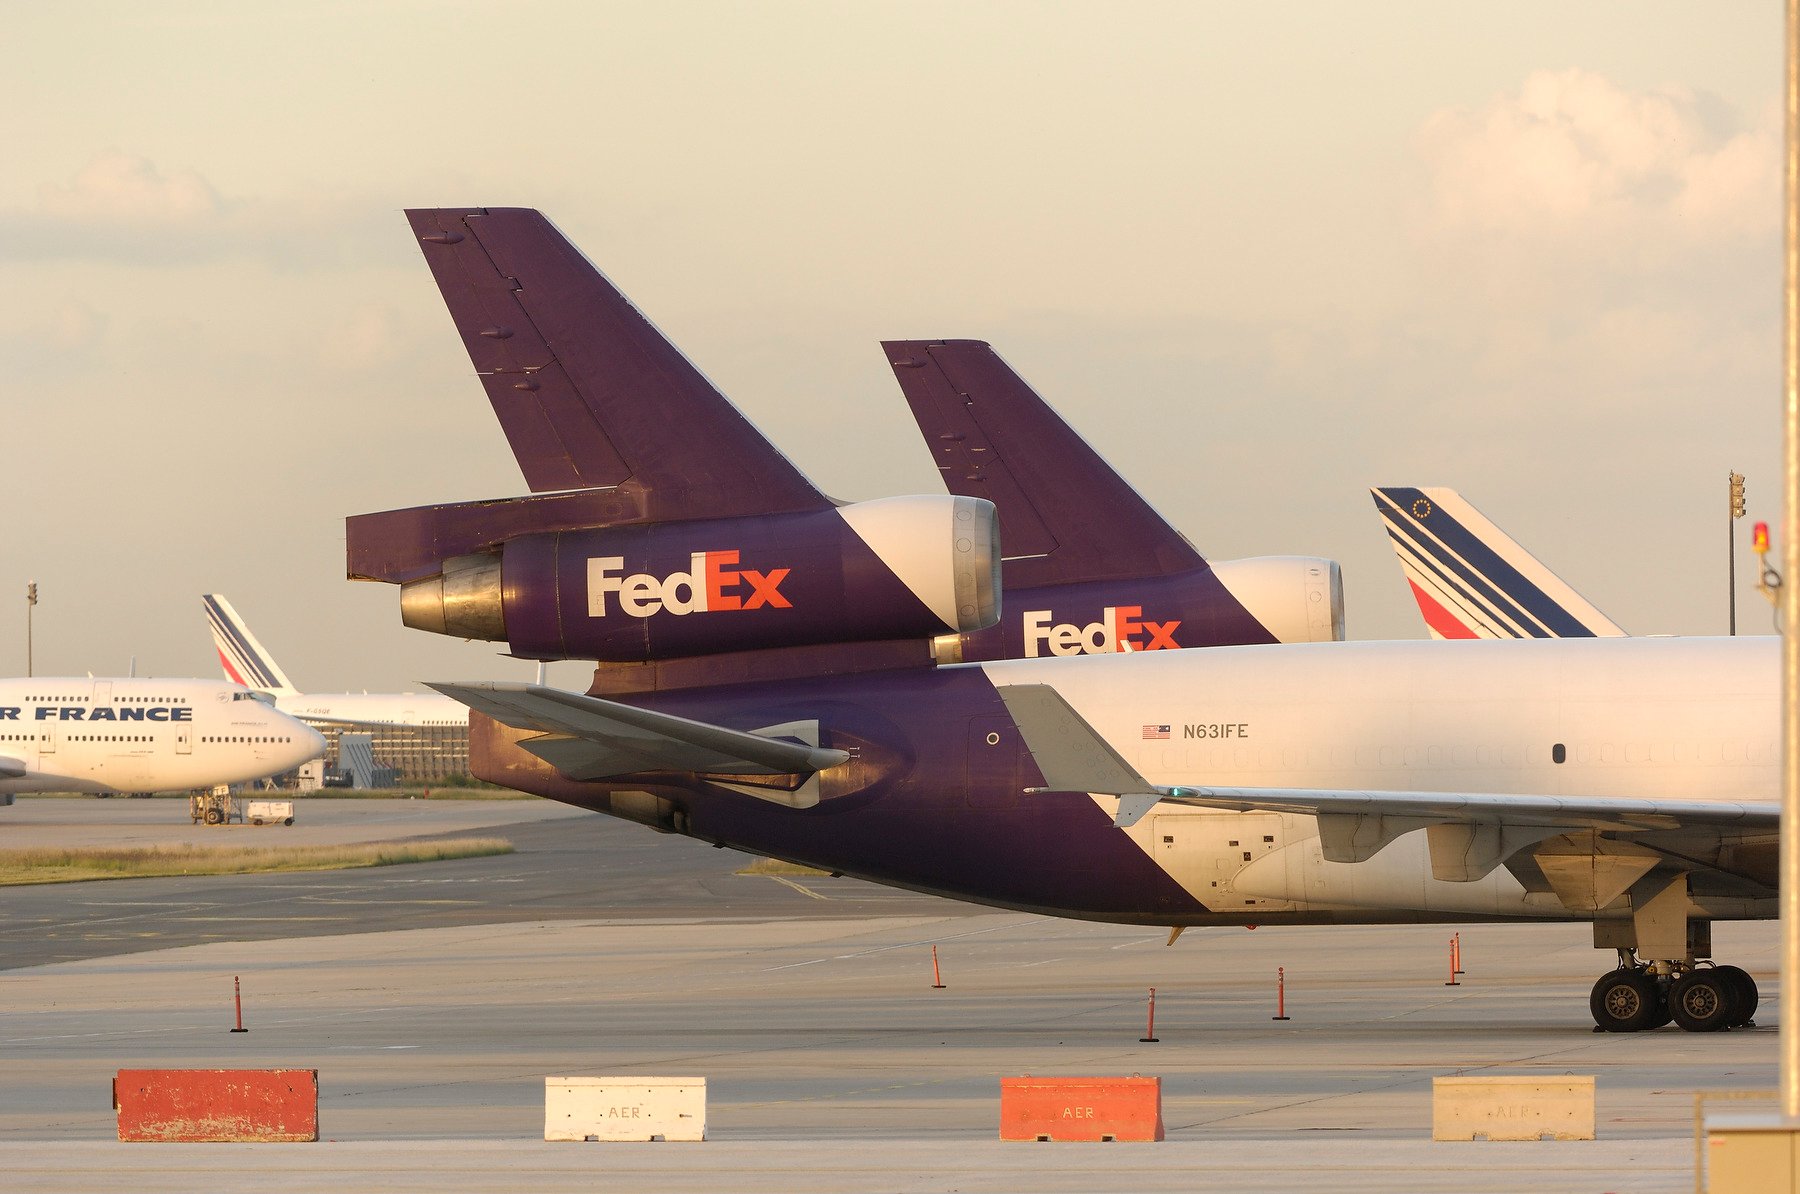 FedEx MD-11 trijets